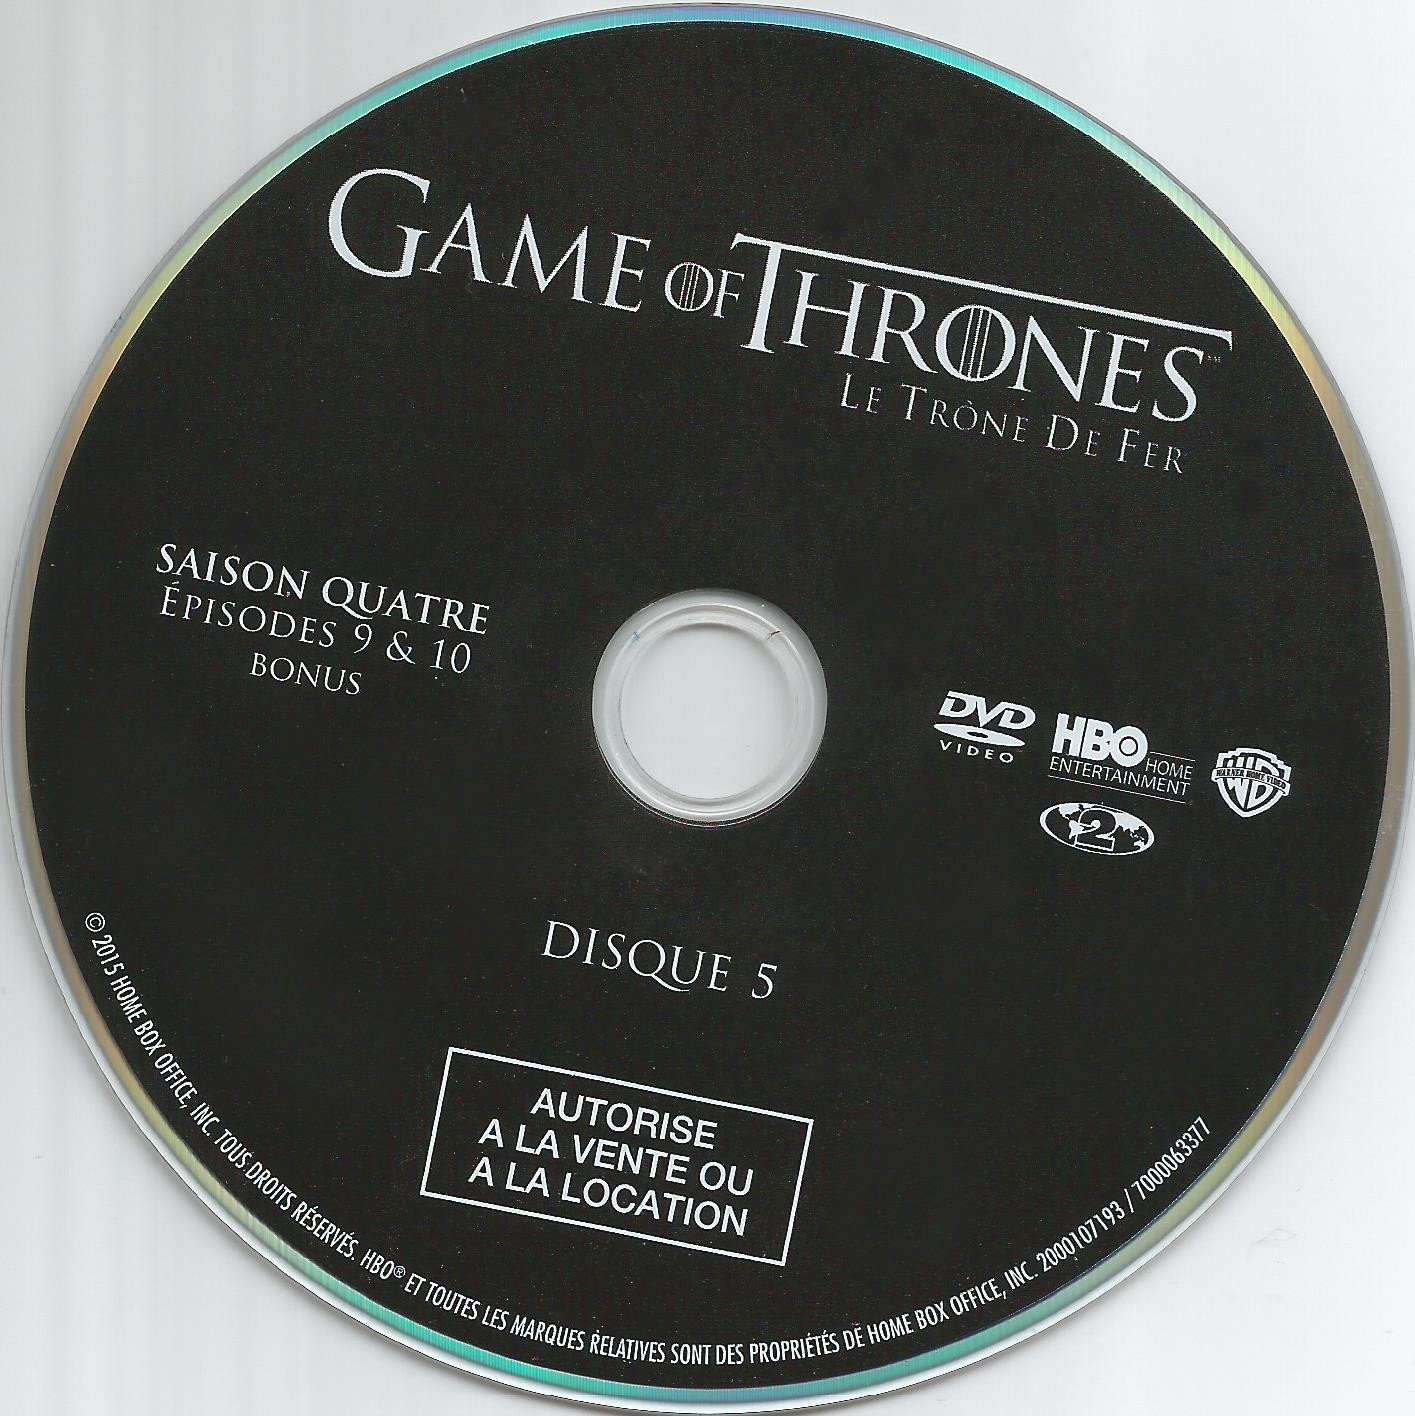 Game of thrones (le trone de fer) Saison 4 DVD 5